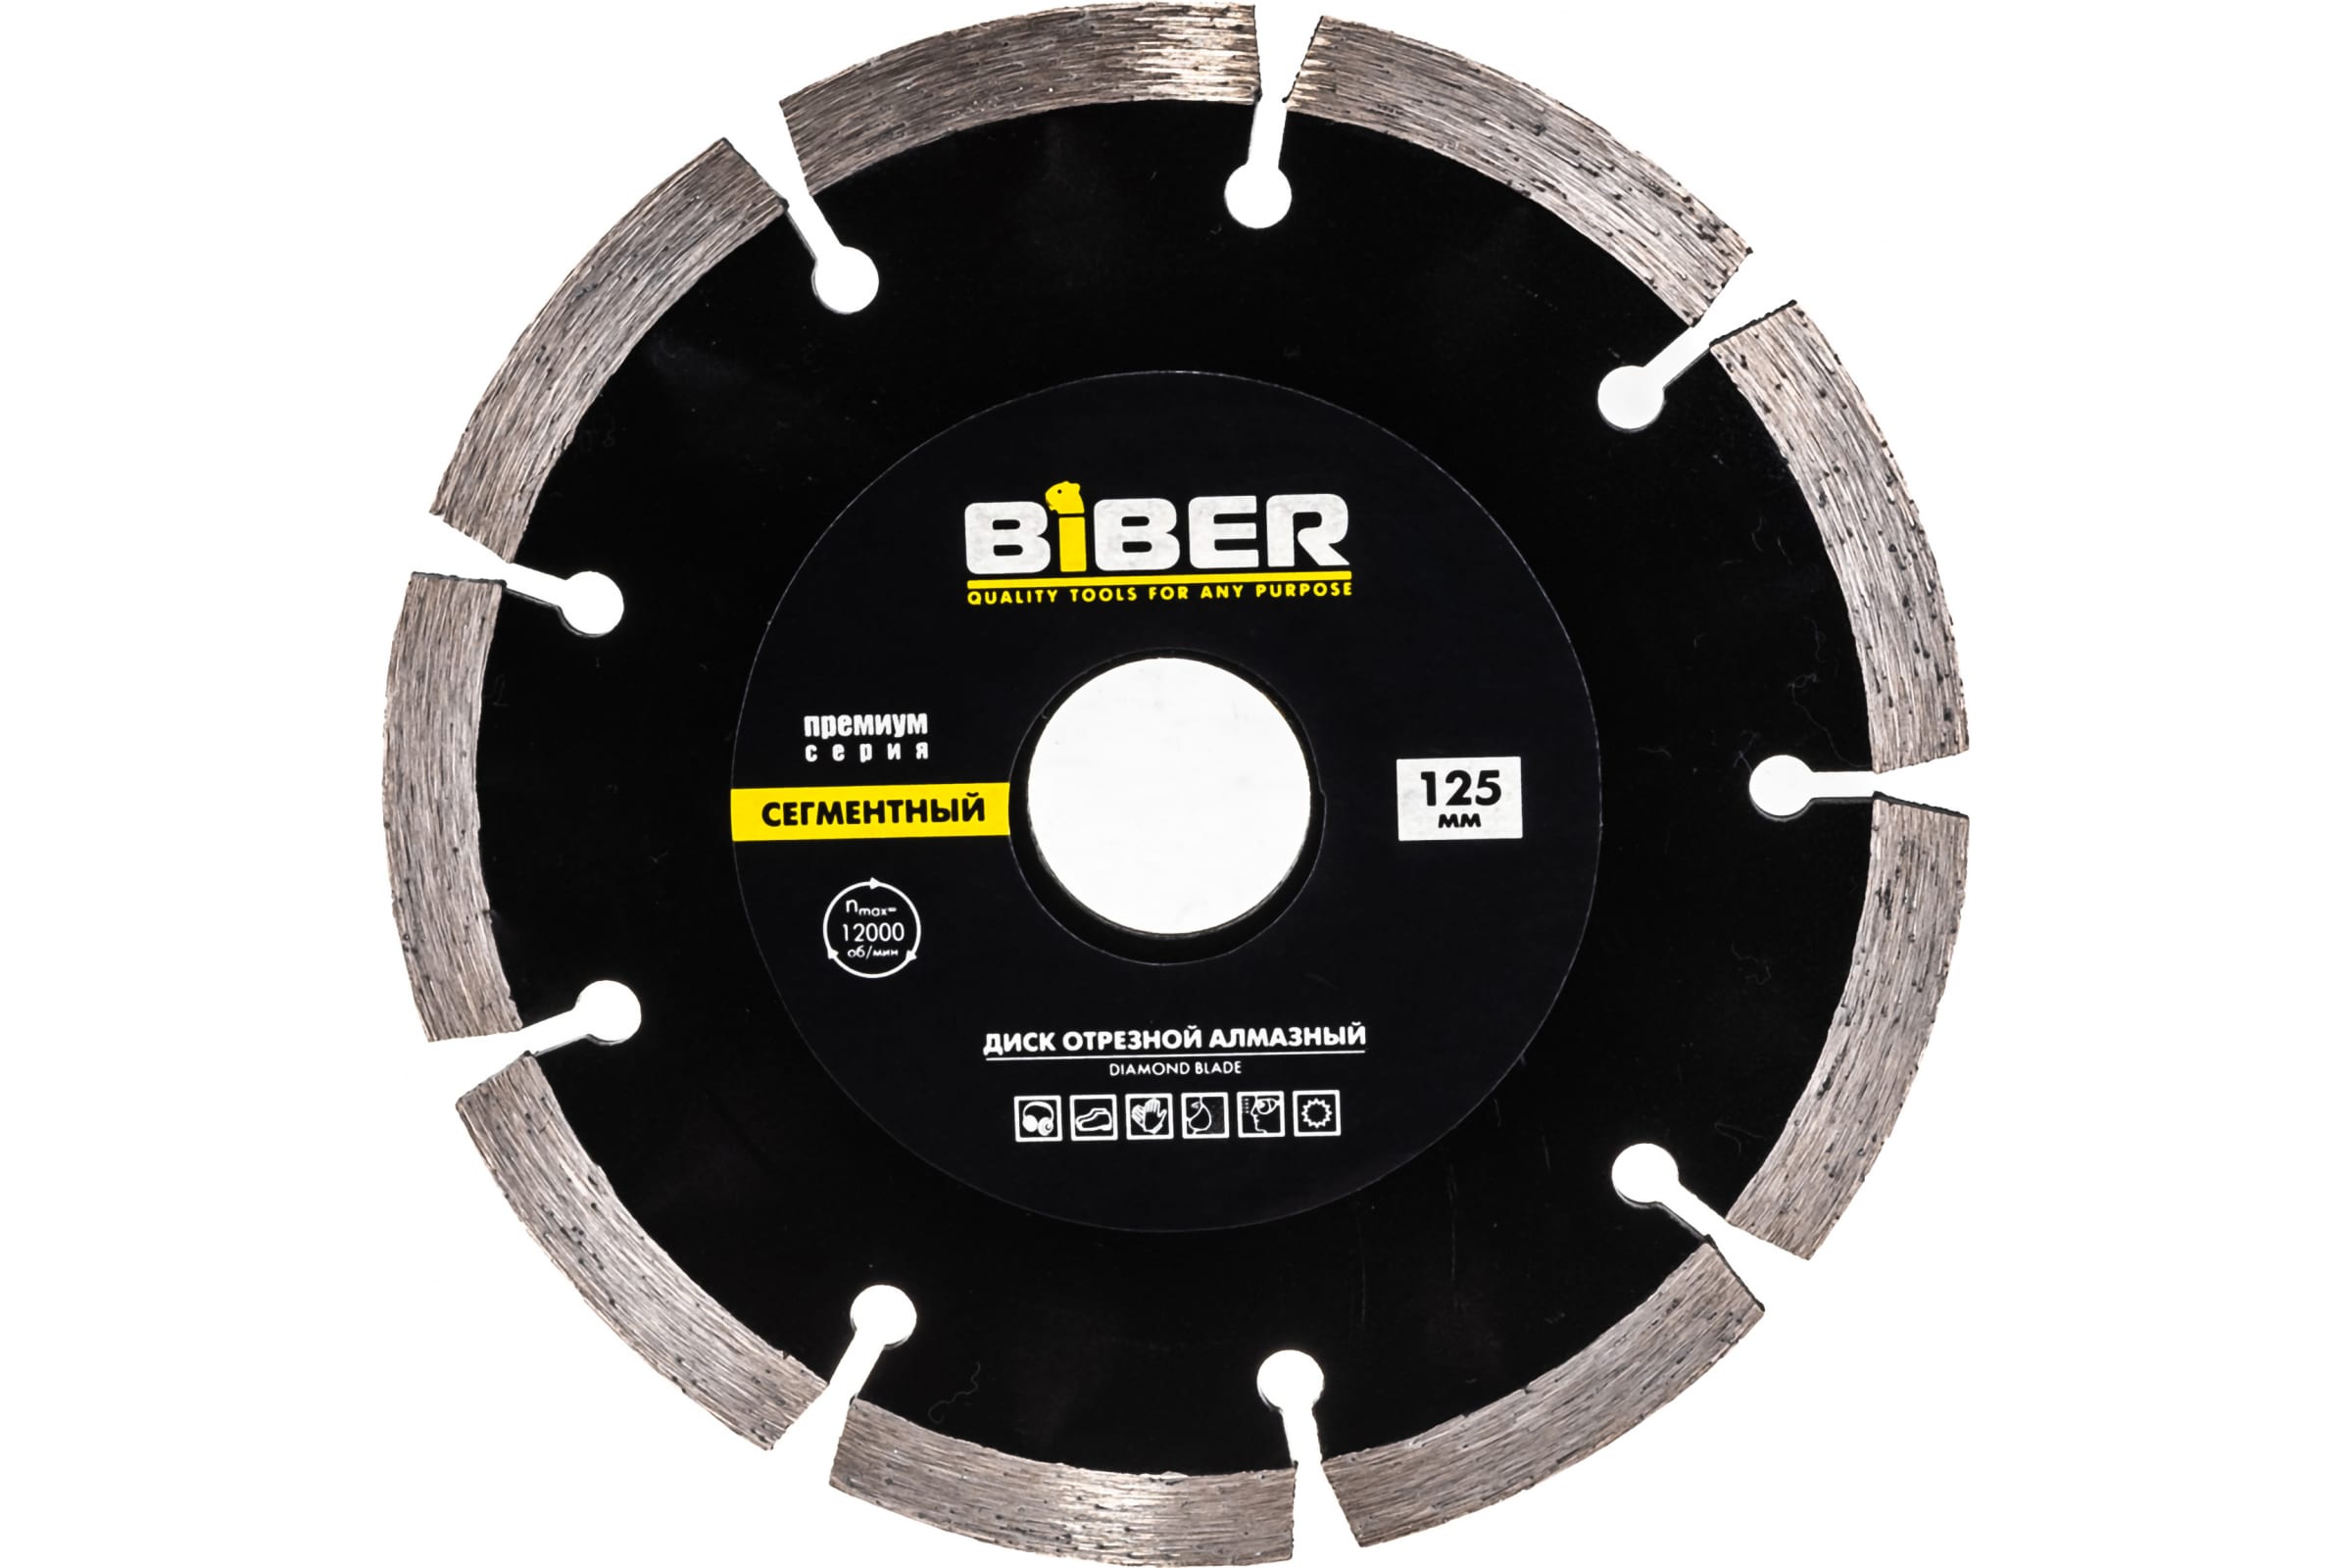 Biber Диск алмазный сегментный Премиум 125мм 70263 тов-039552 пильный диск biber